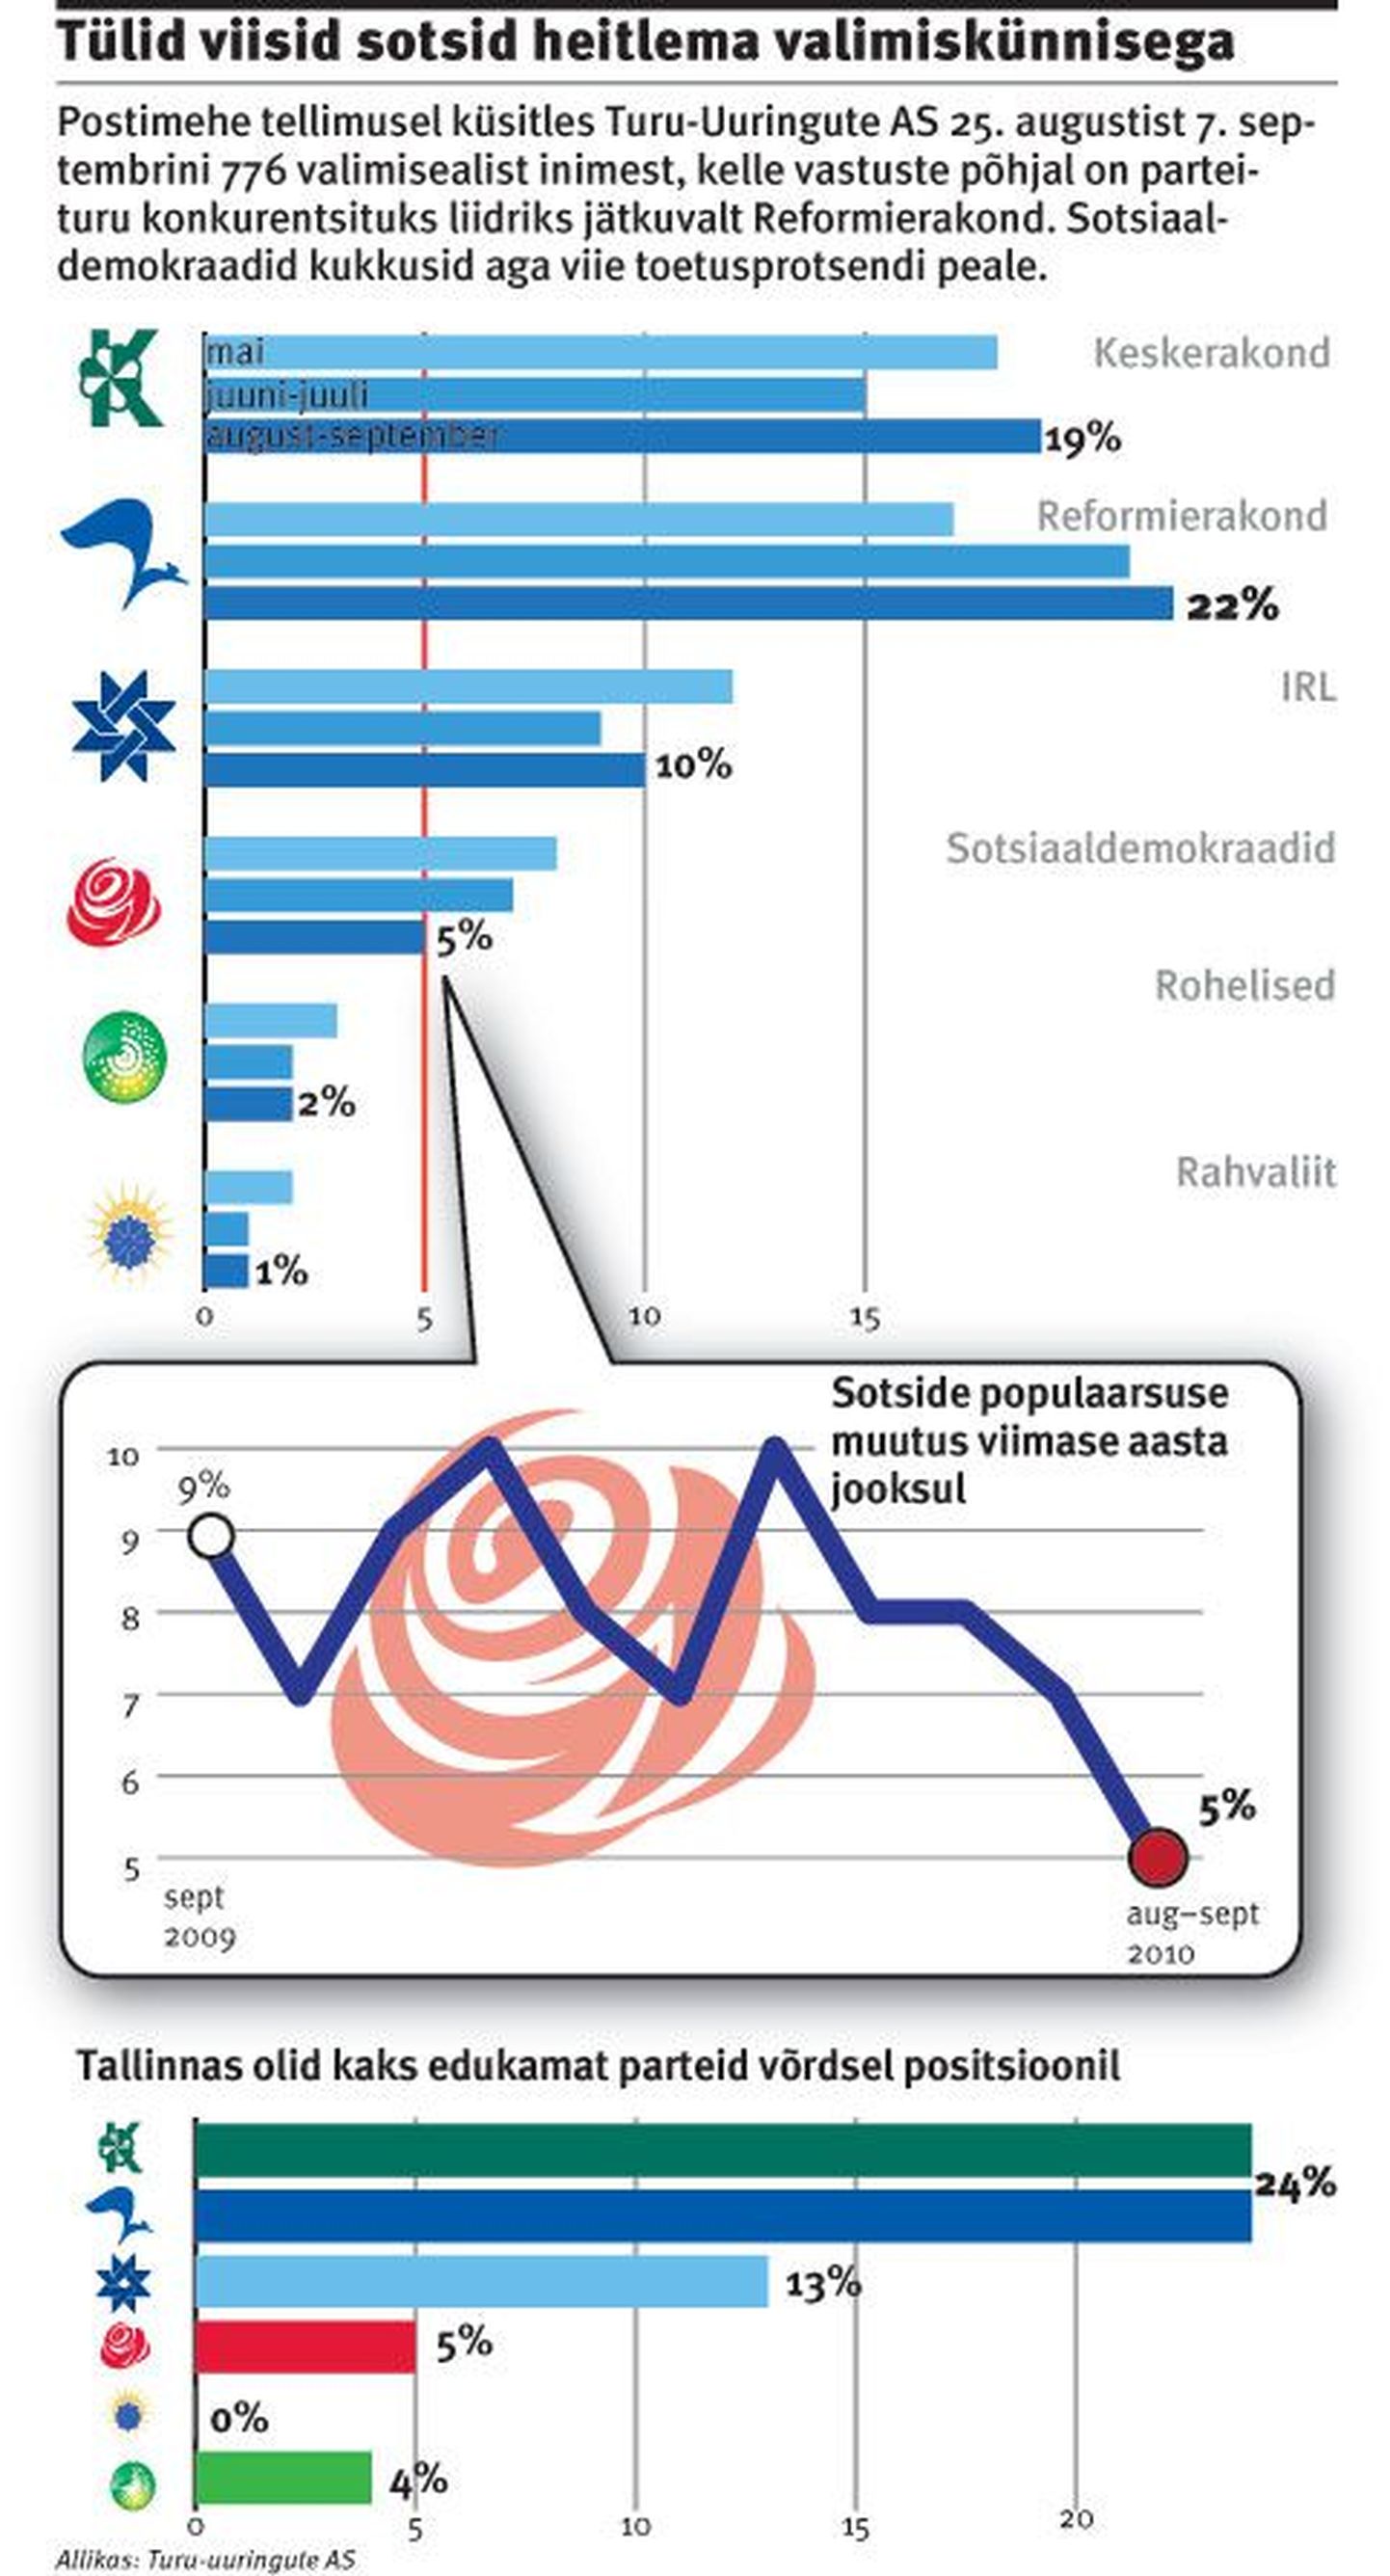 Рейтинг социал-демократов и других партий, август-сентябрь 2010.